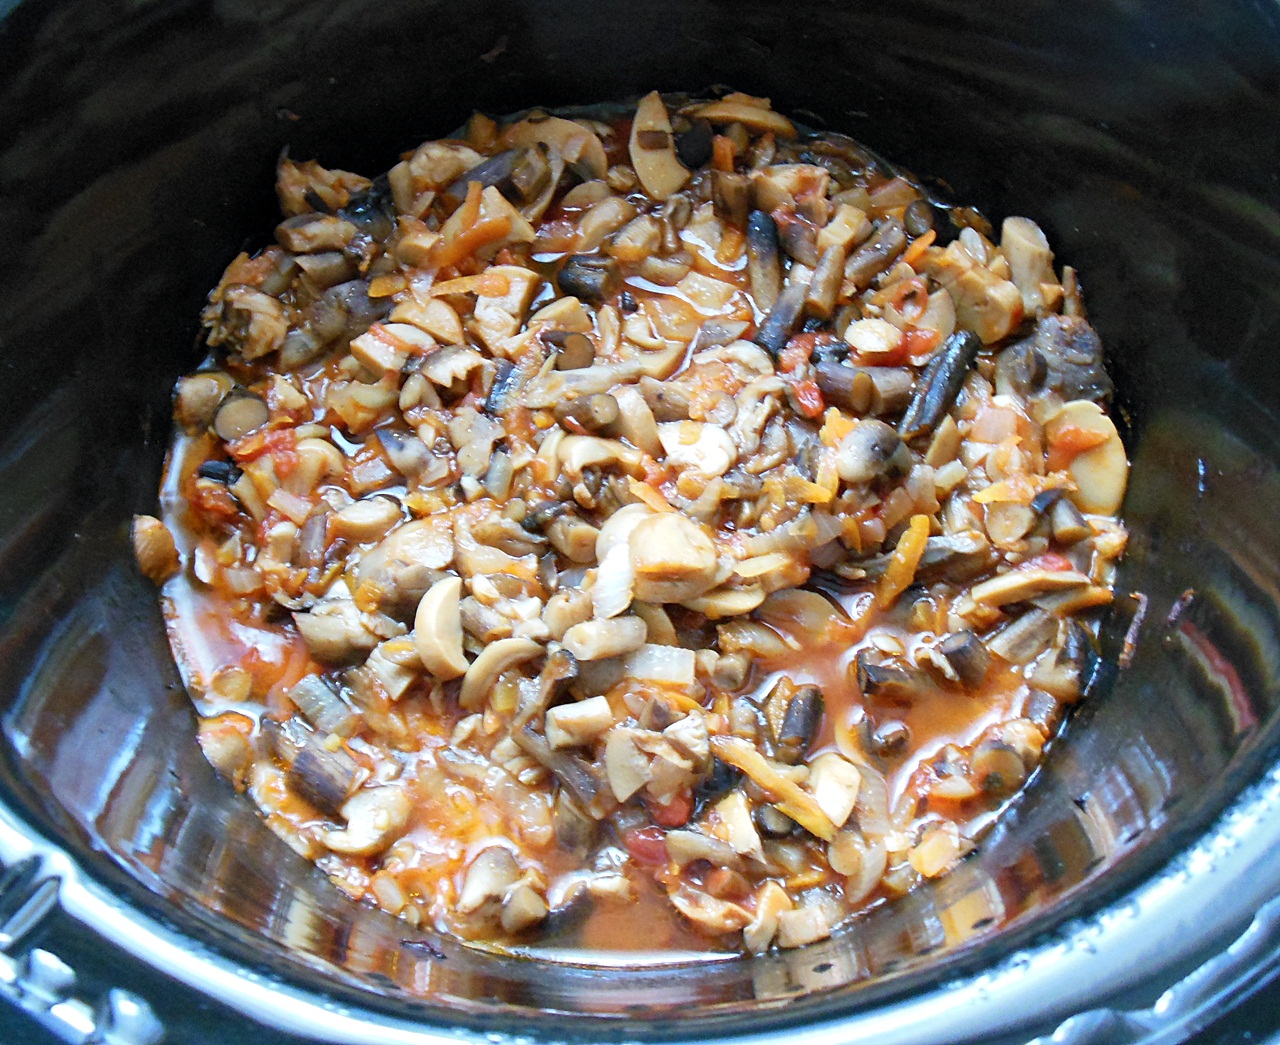 Tocanita cu ghebe si ciuperci la slow cooker Crock-Pot 4,7 L